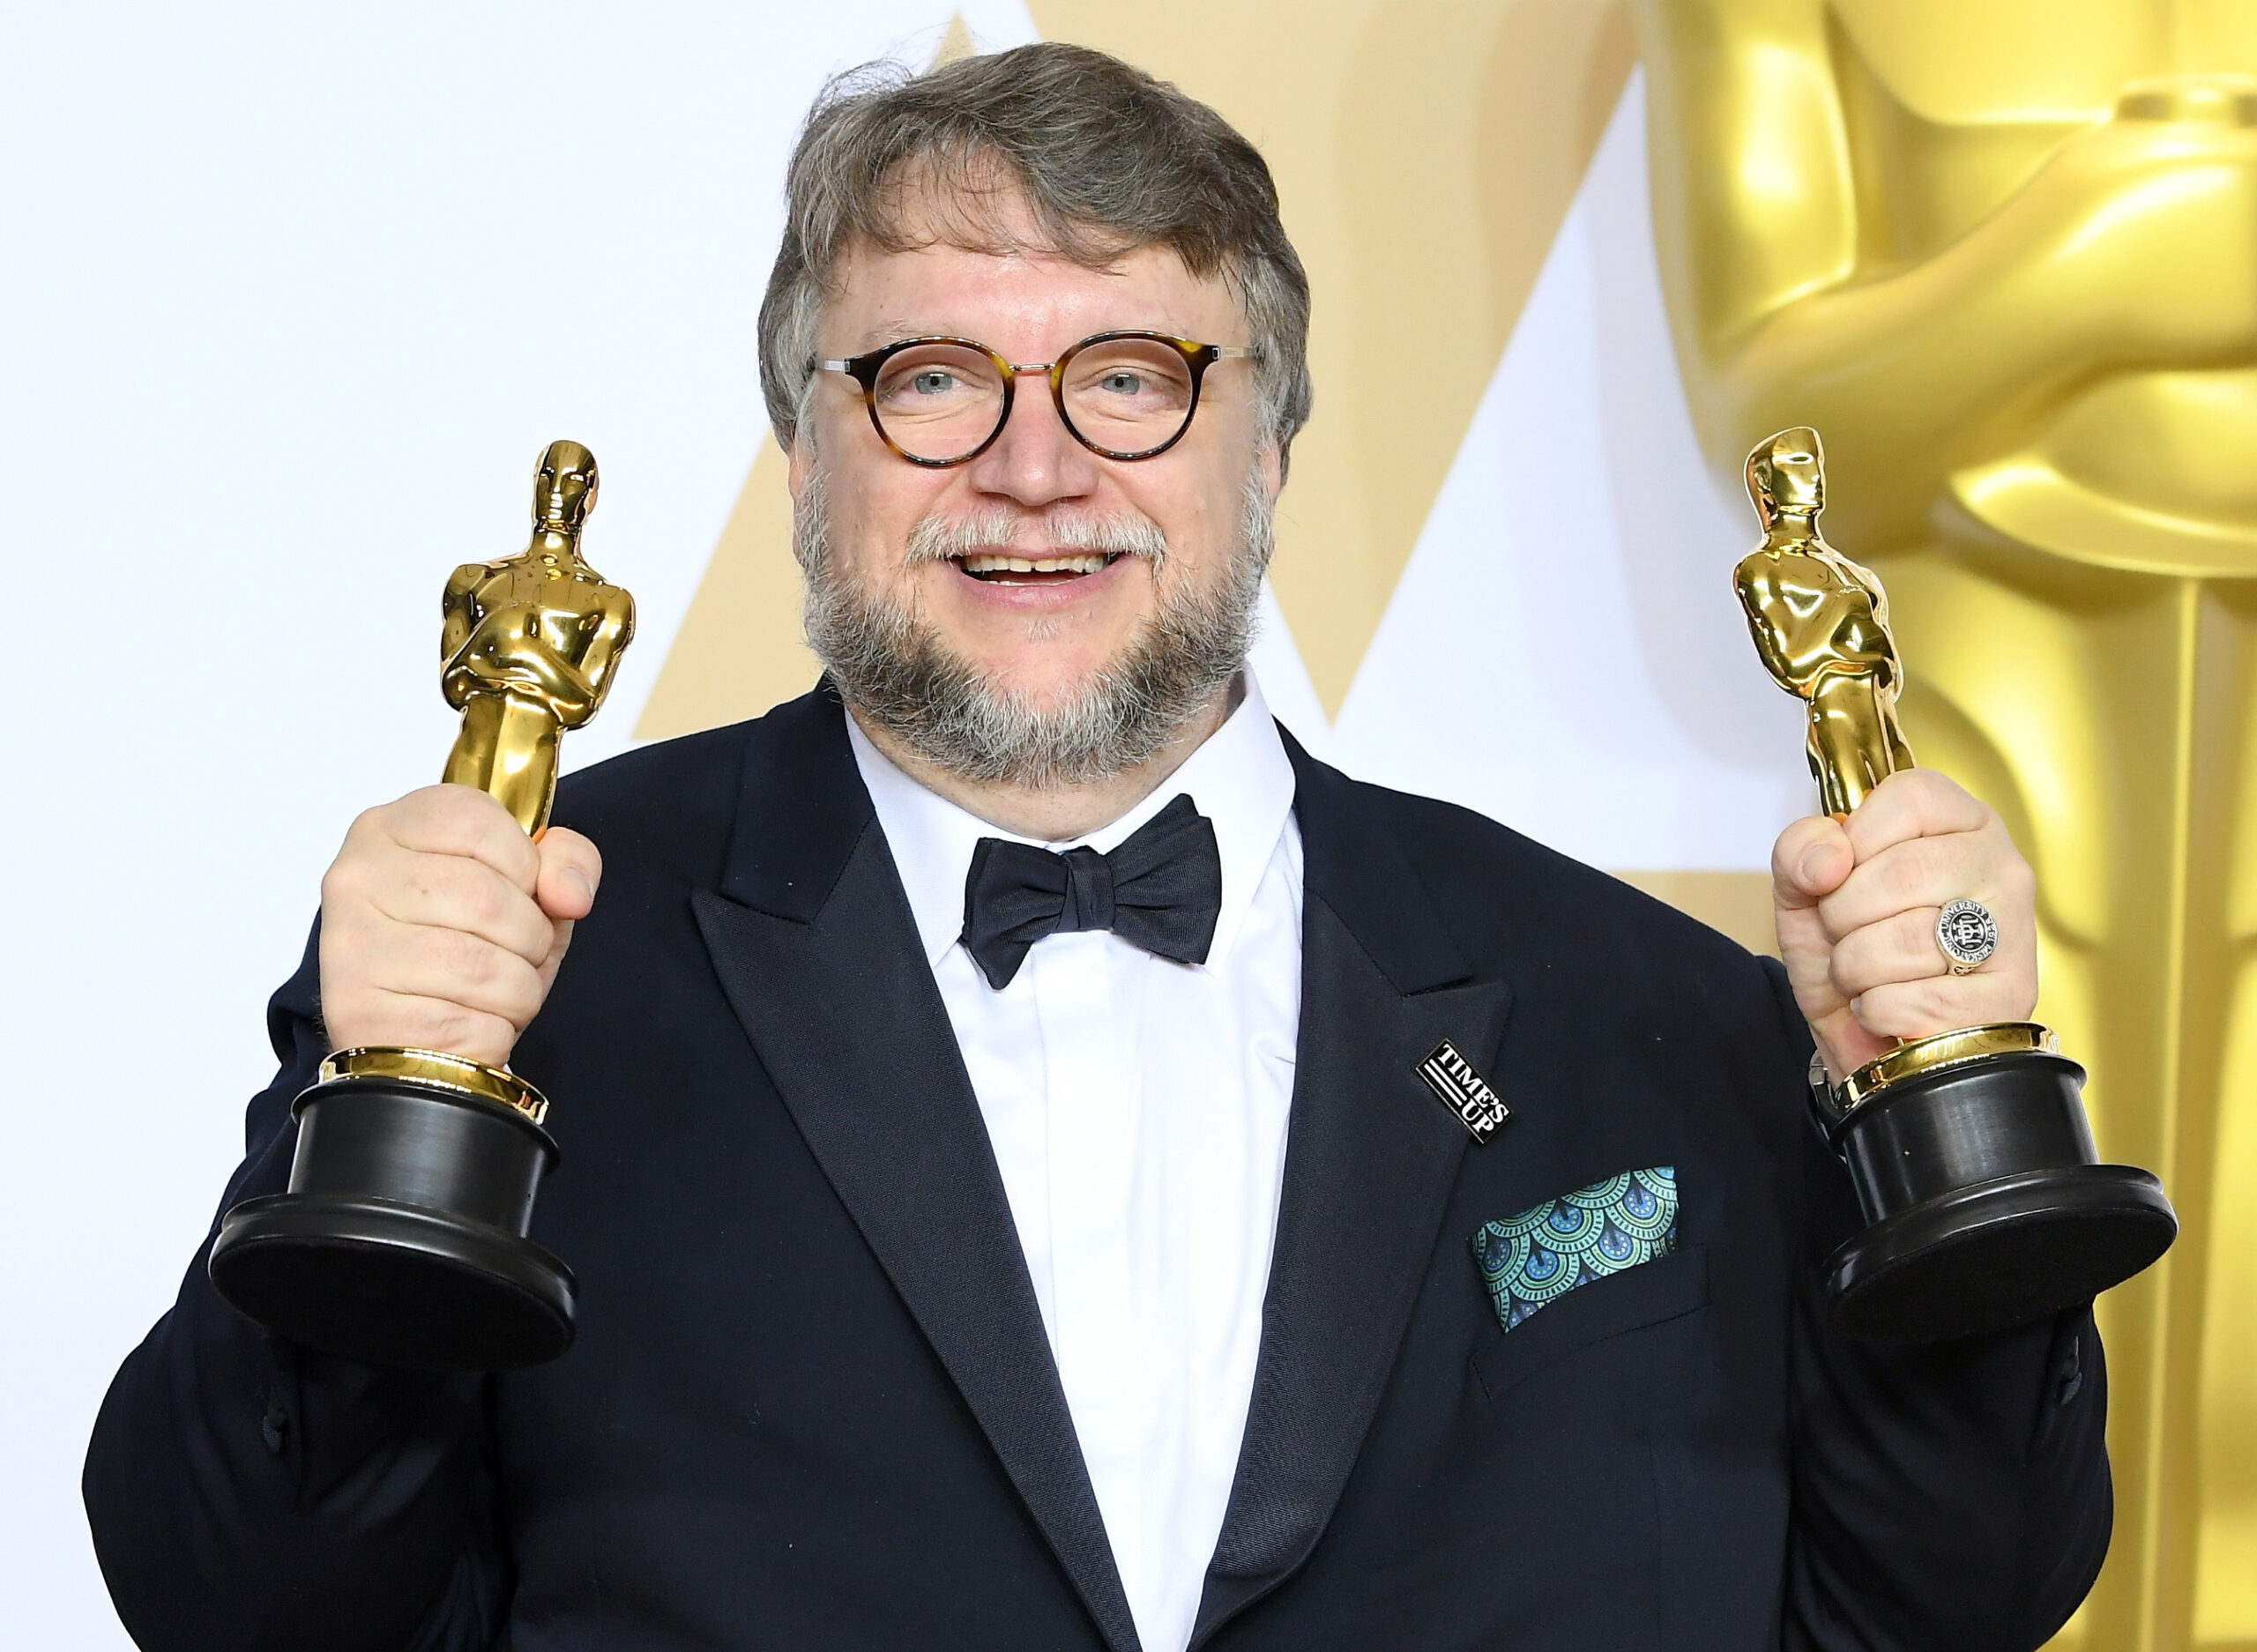 Guillermo Del Toro financiará viajes a mexicanos sobresalientes